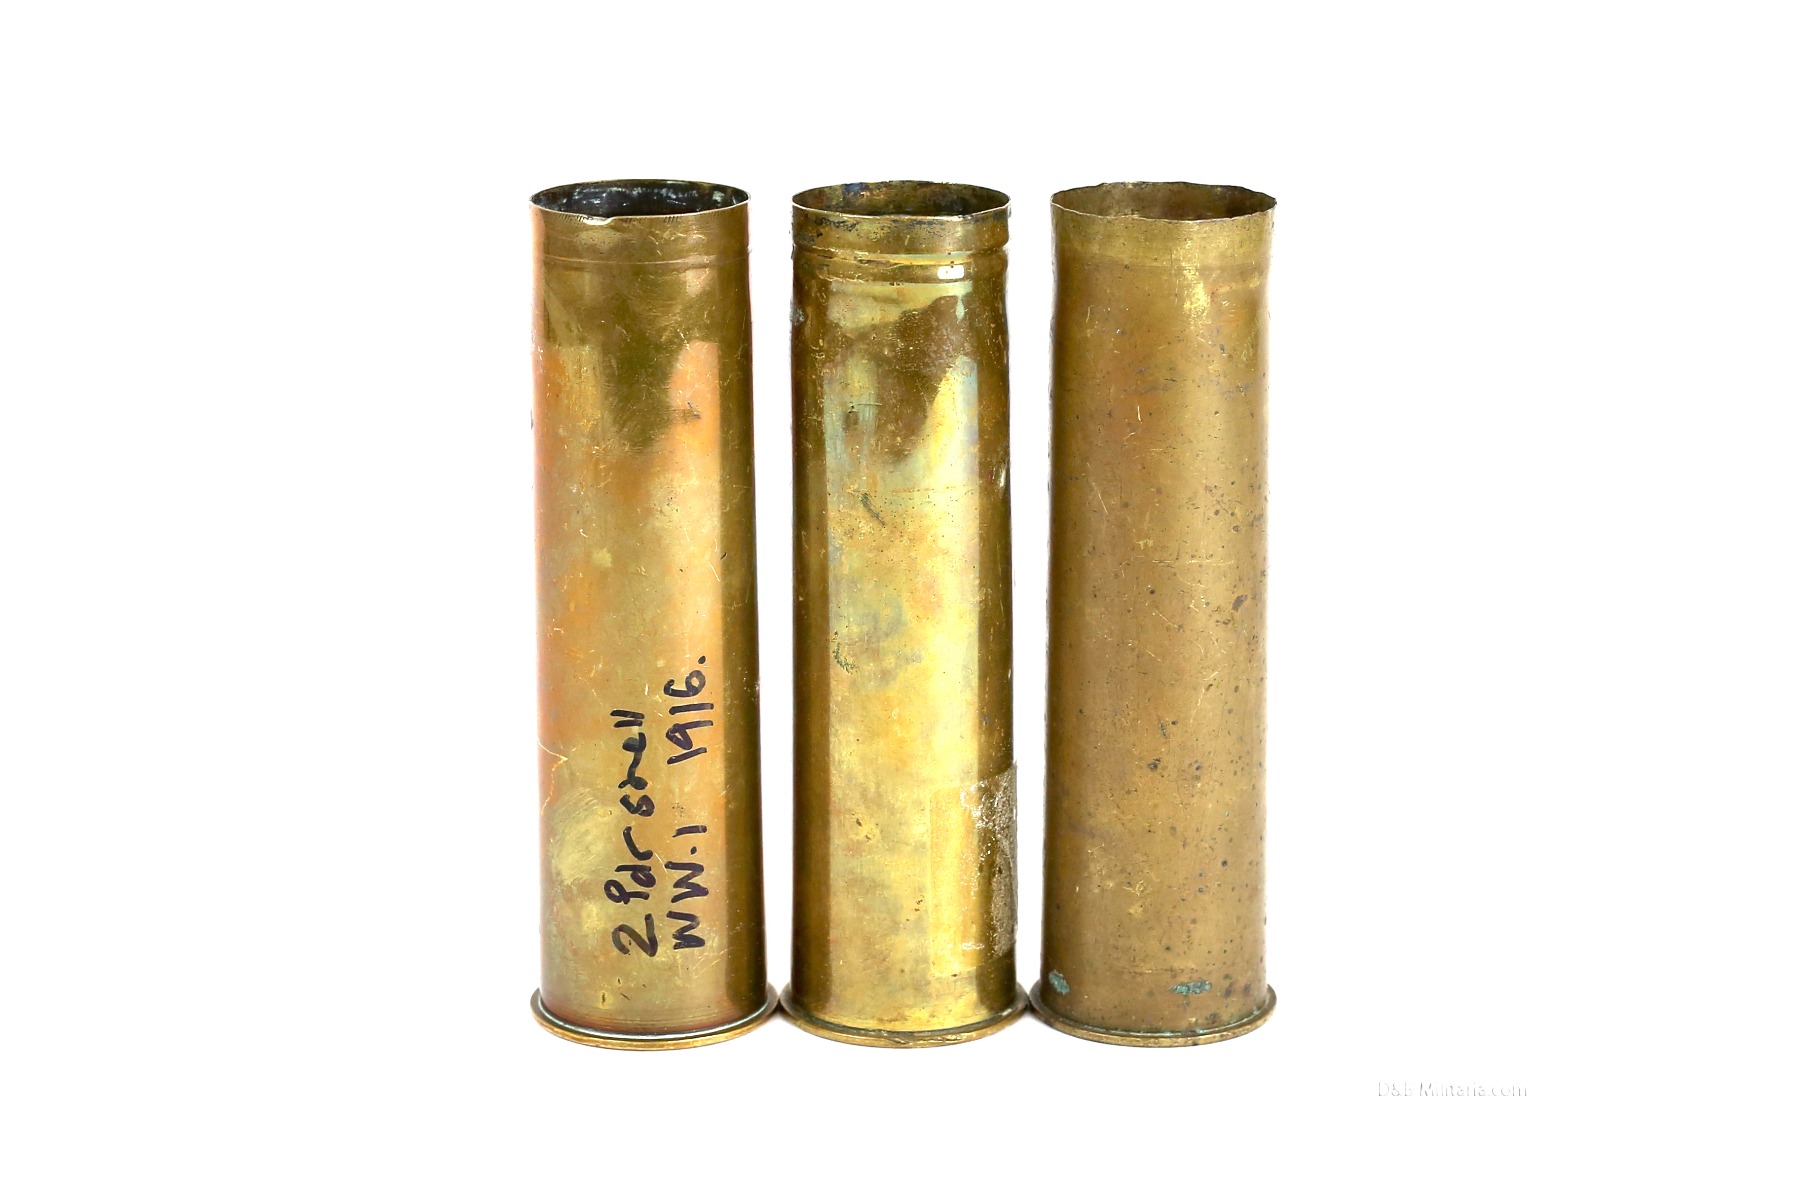 Compare prices of Replica 30mm Artillery Round 100 oz Silver